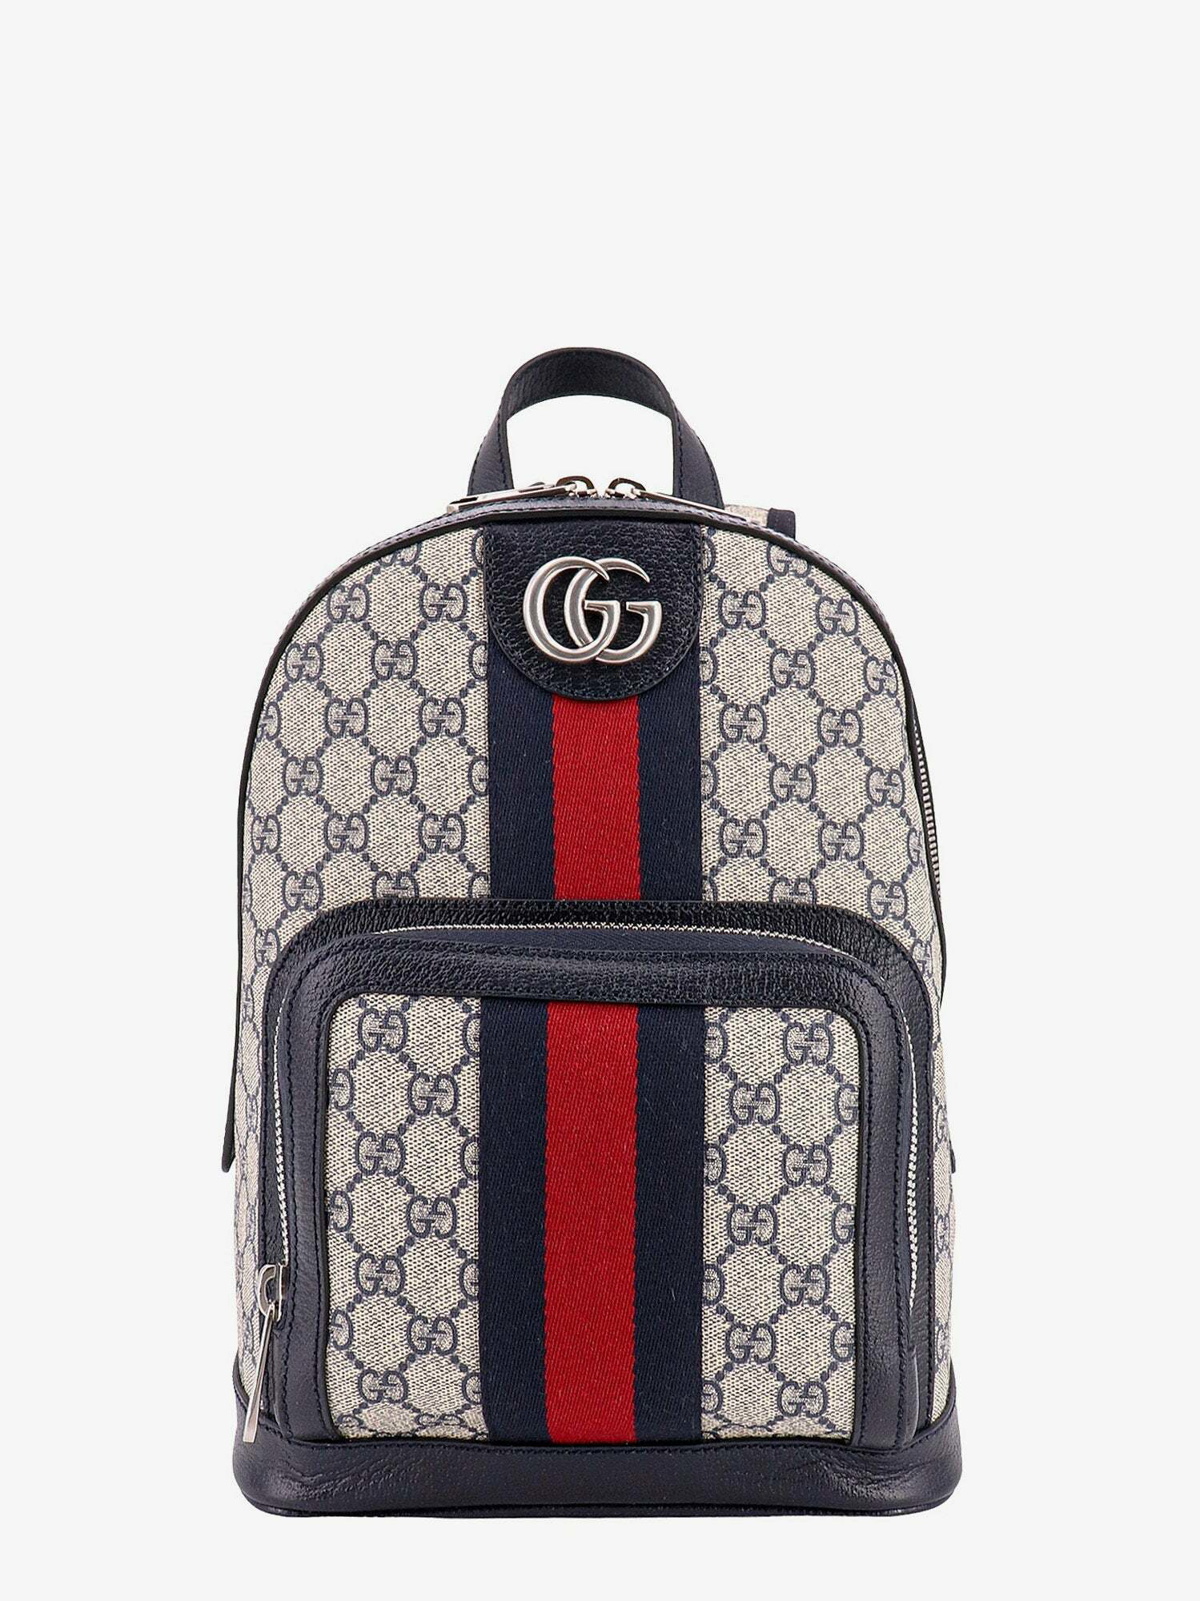 Grey GG-plaque Supreme-canvas laptop case, Gucci